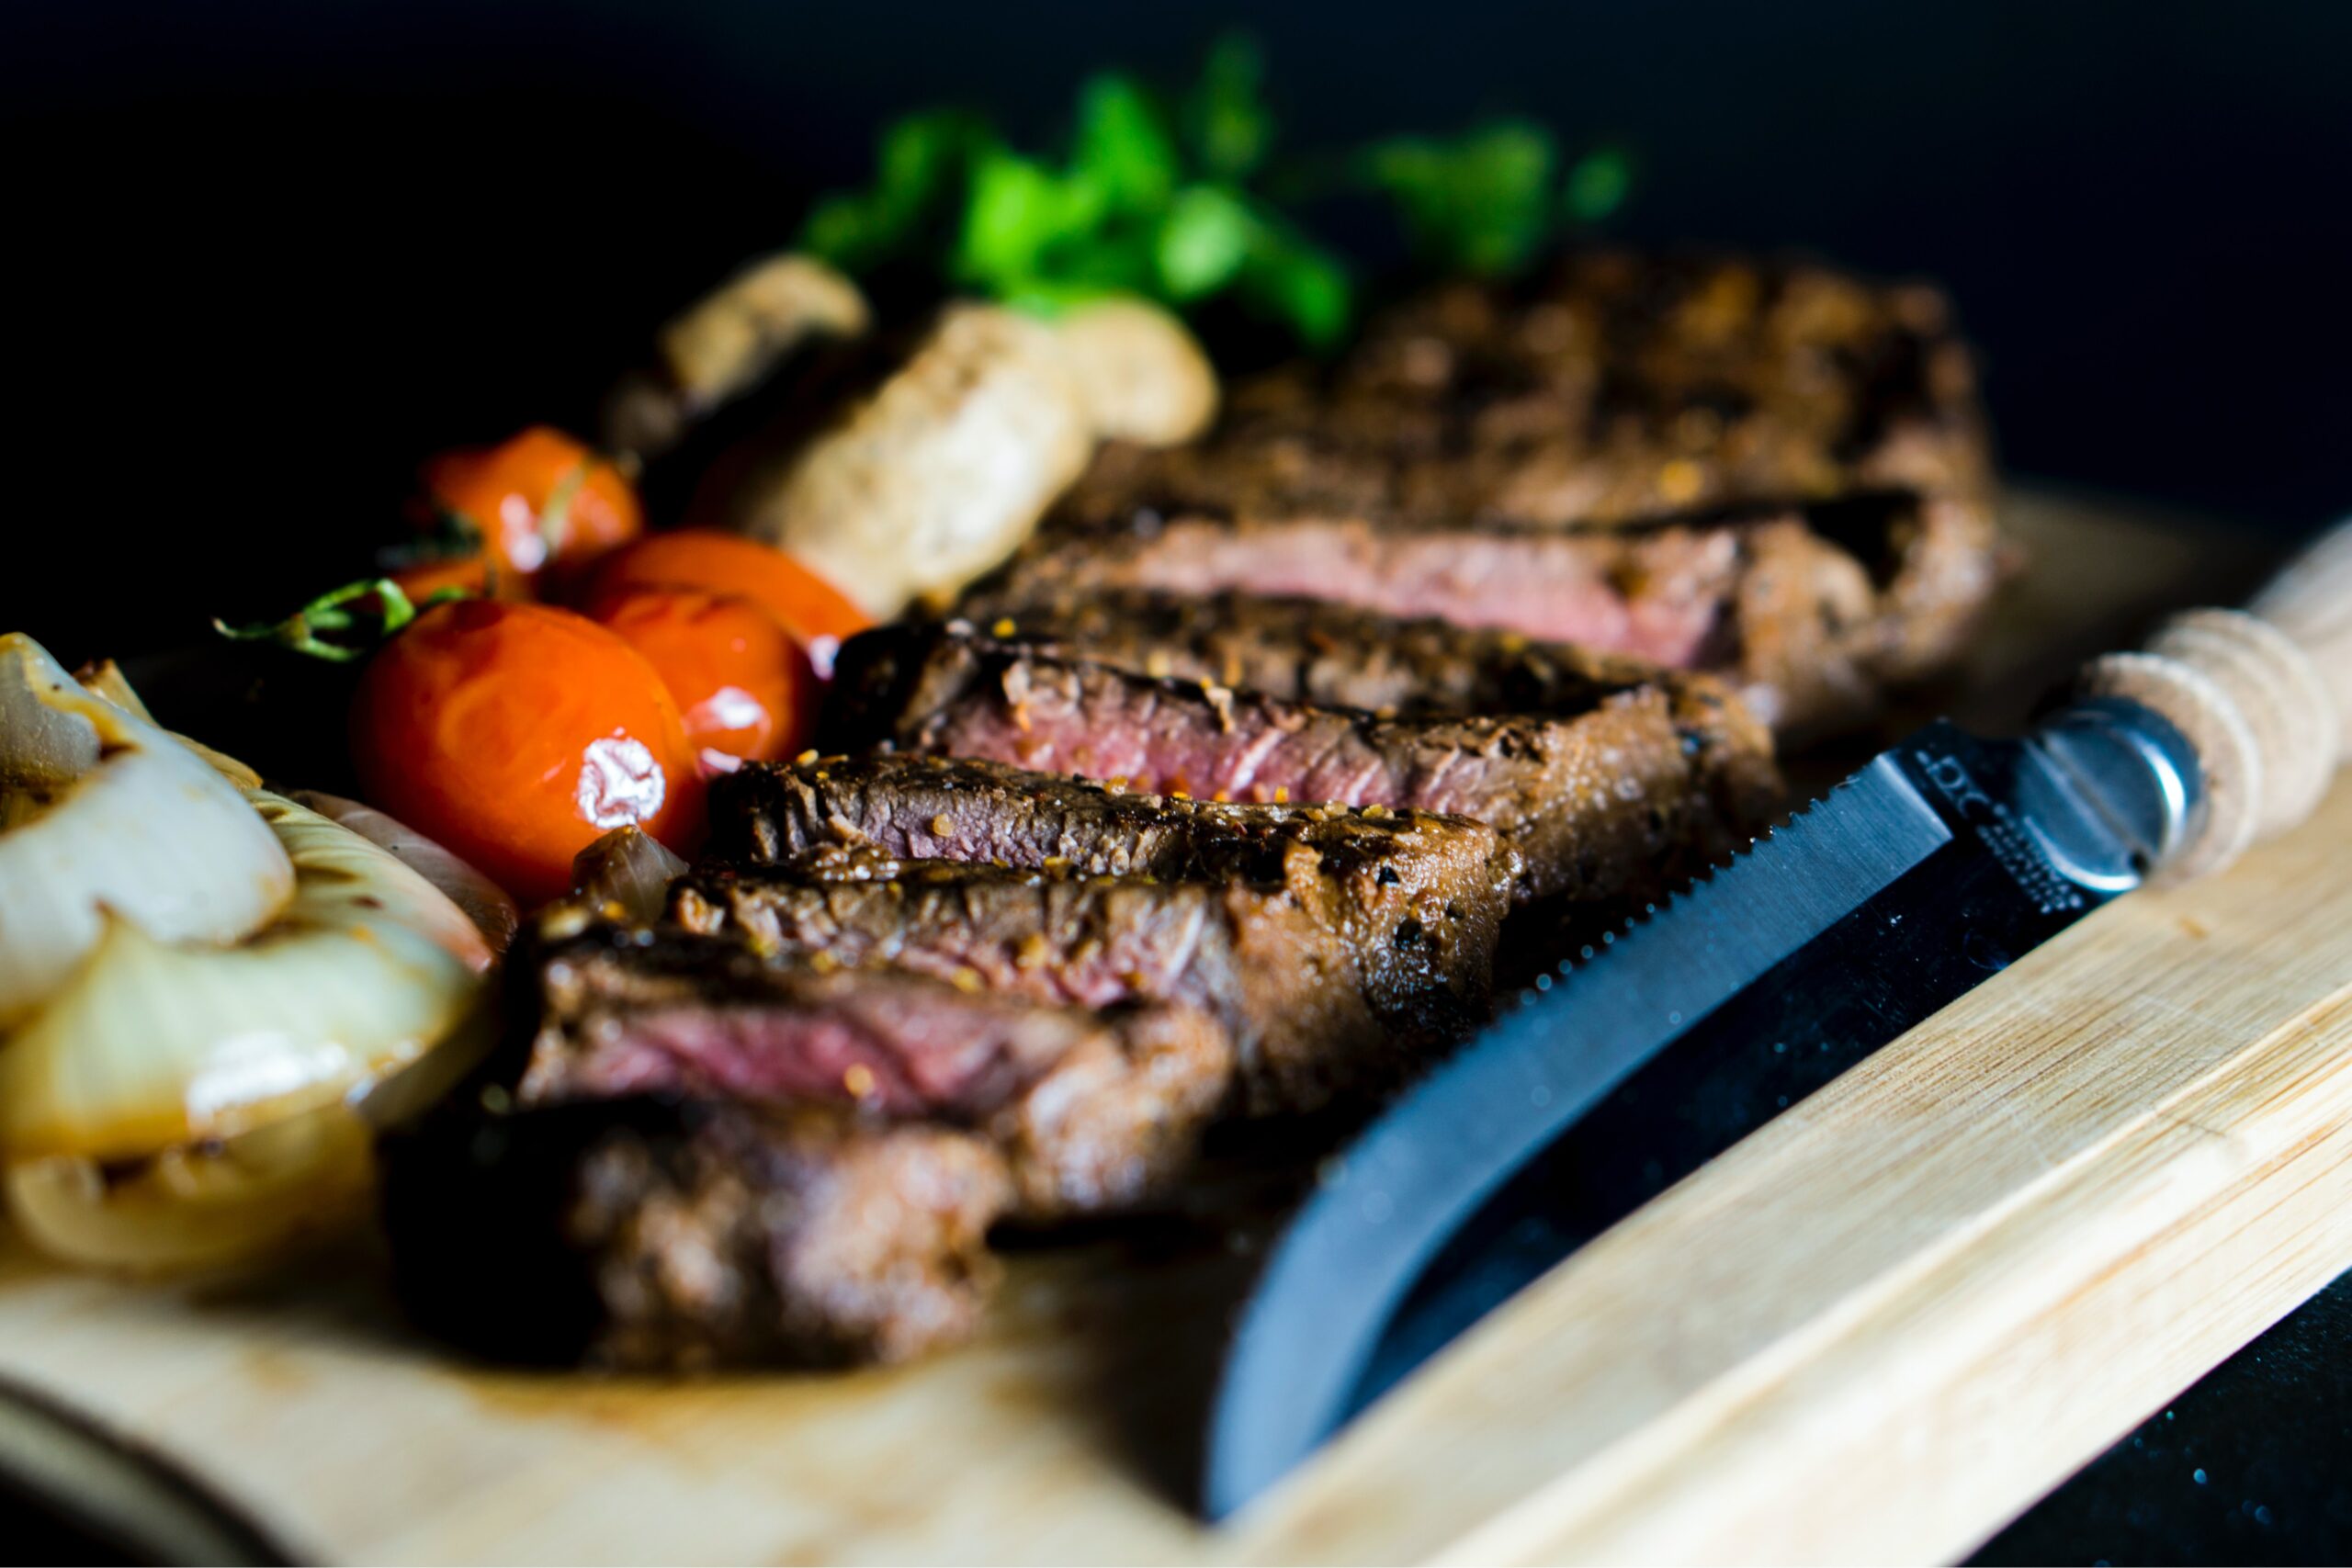 Best Steak Knife Set Under $100